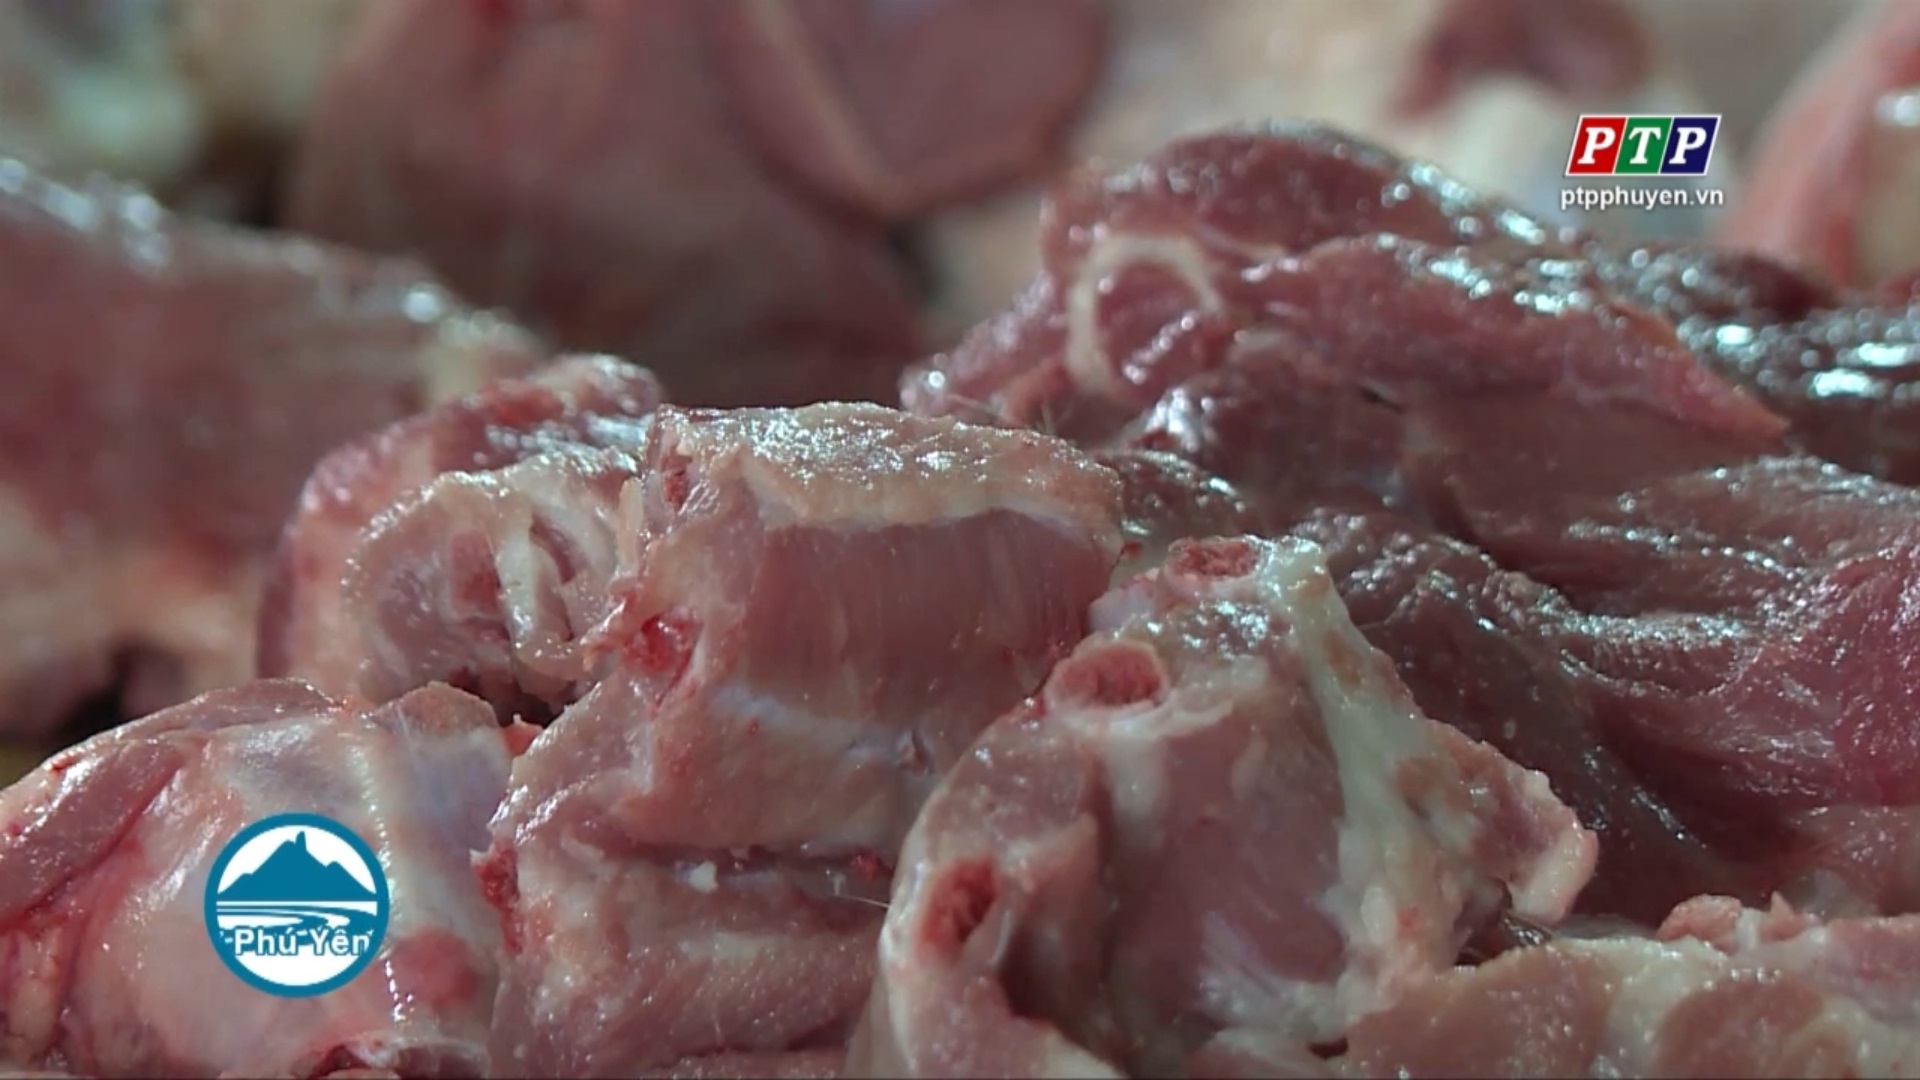 Giá thịt lợn có thể lên trên 70.000 đồng/kg vào tuần này